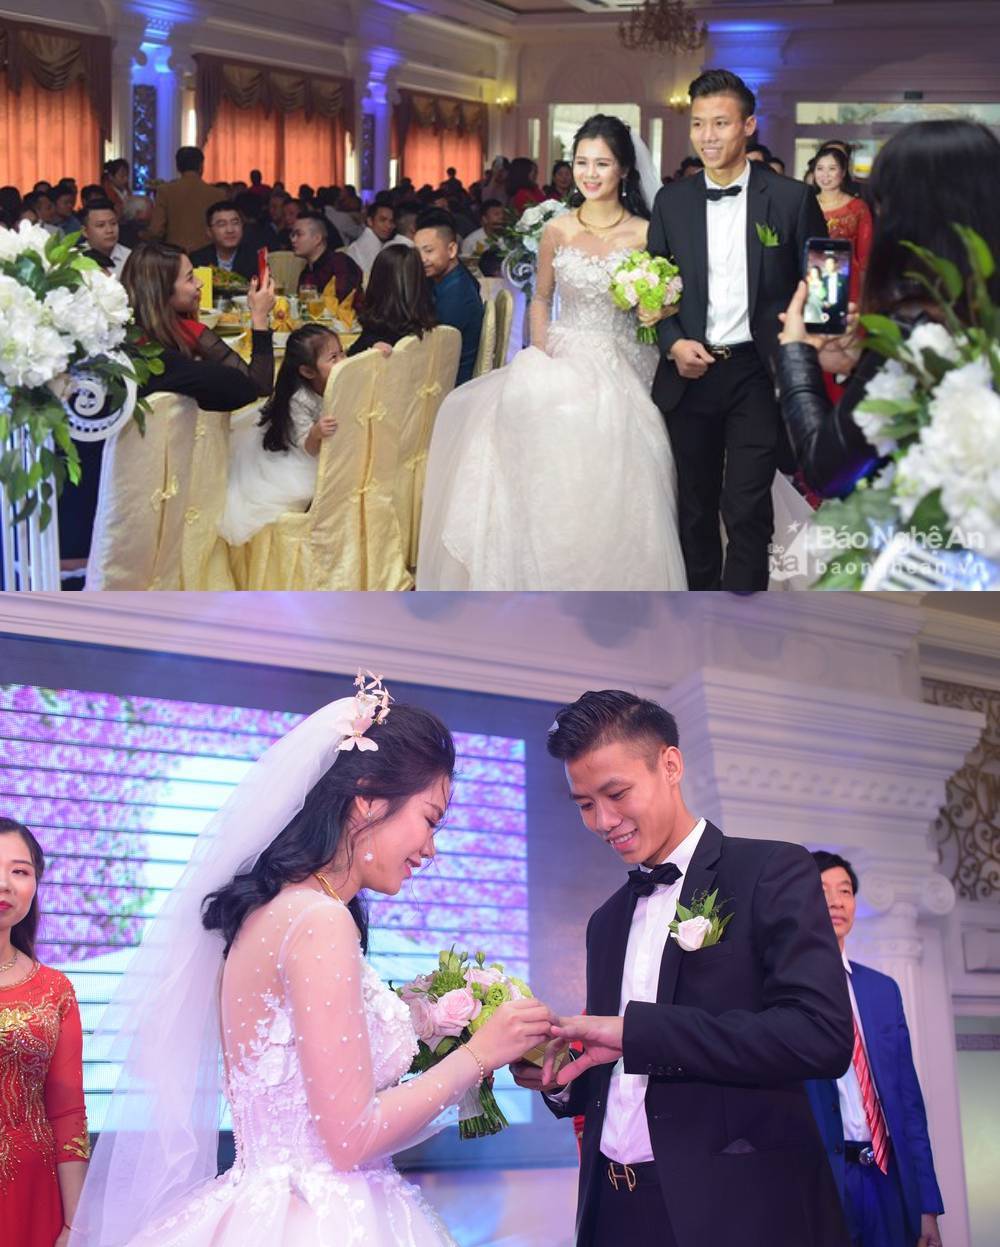  
Hình ảnh trong đám cưới của cặp trai tài gái sắc. (Ảnh: Báo Nghệ An/ FB Quế Ngọc Hải)